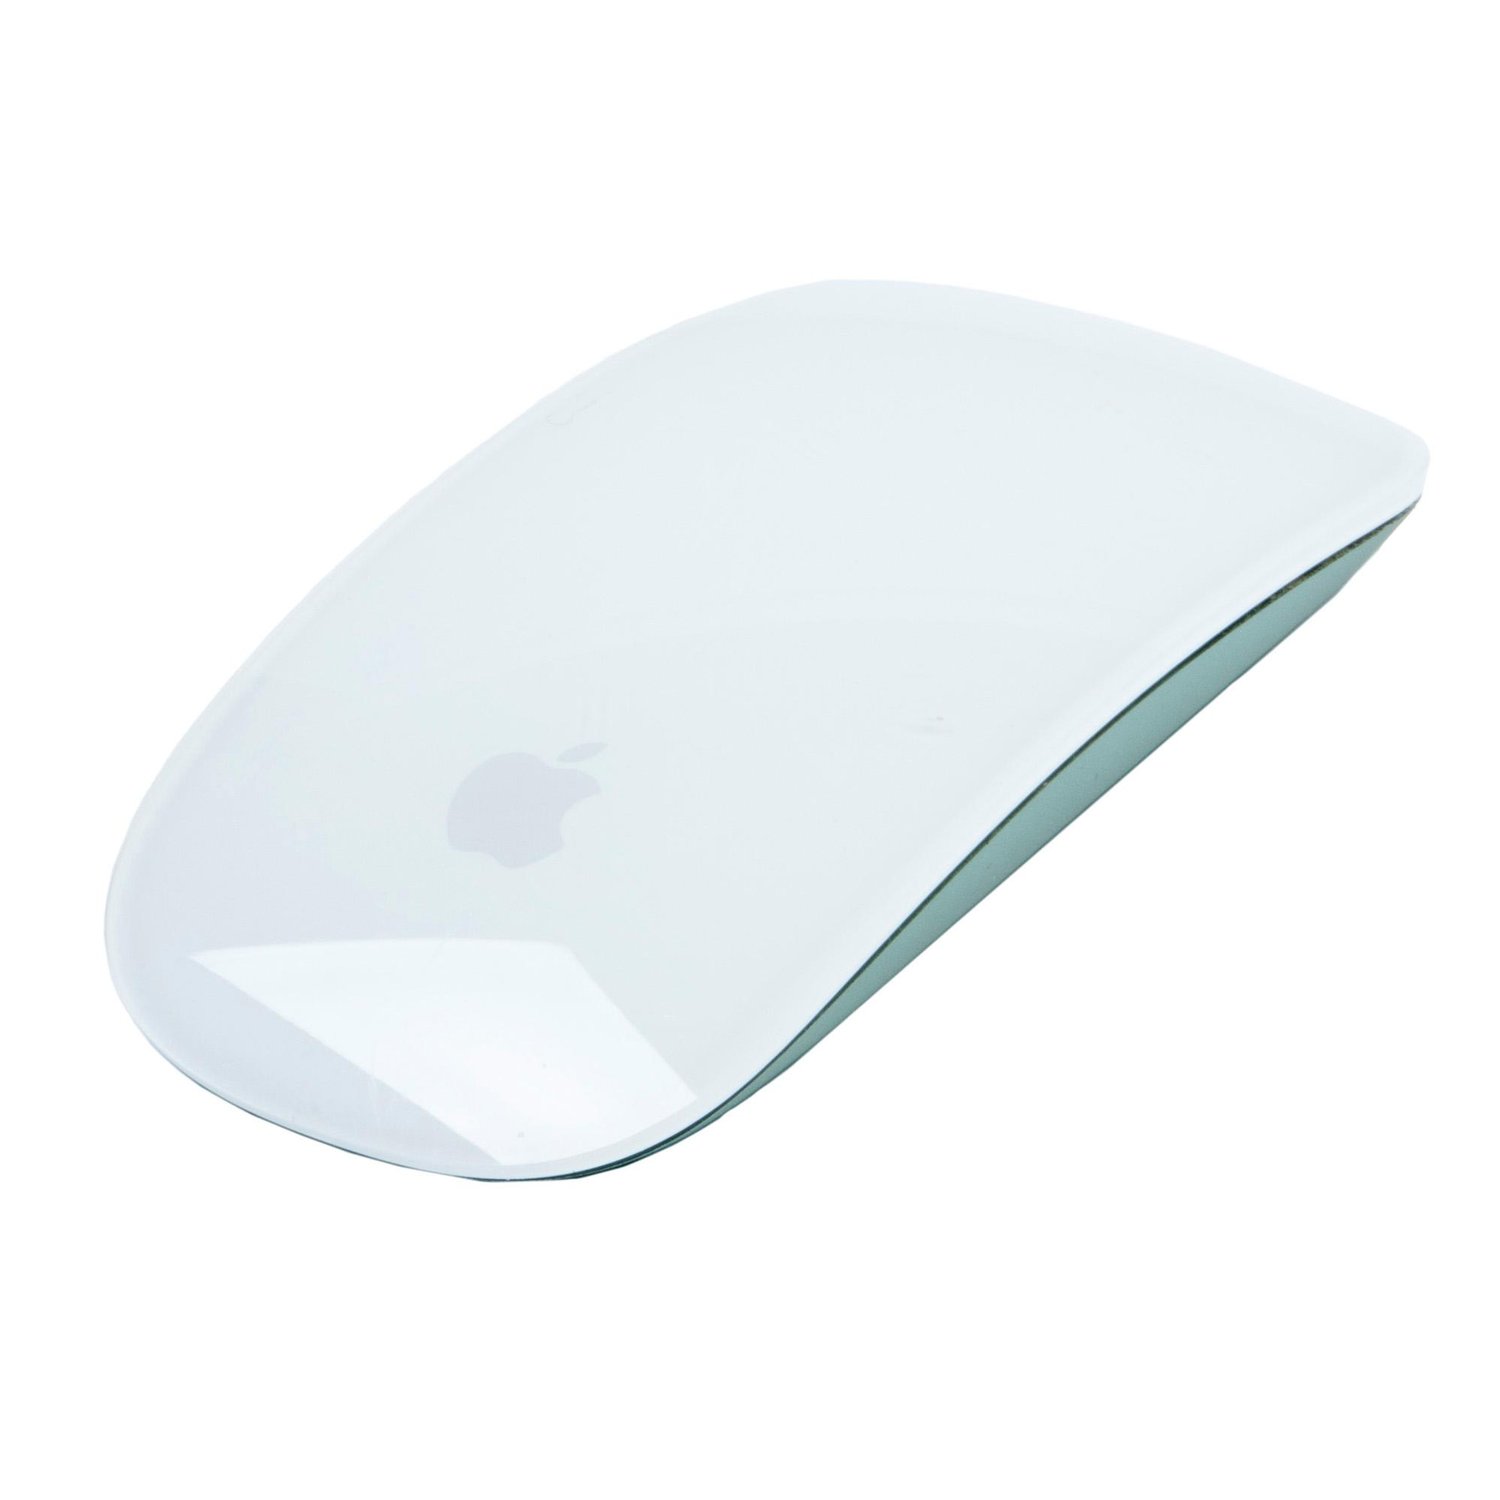 Apple MK2E3AM/A Magic Mouse 2 (Current Model) - at MacSales.com